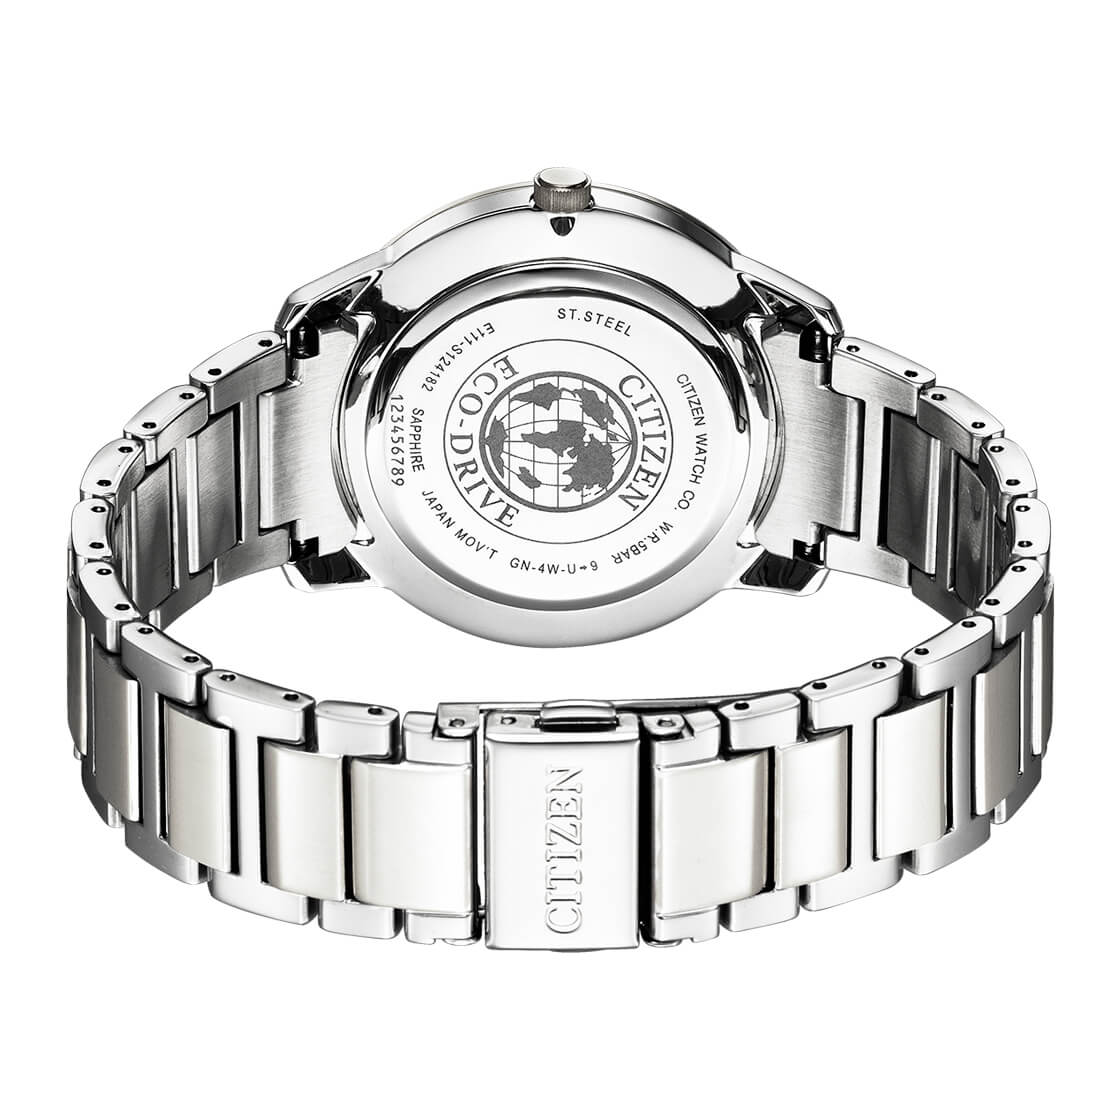 Citizen - BM7520-88N -Eco DriveStainless Steel Watch For Men